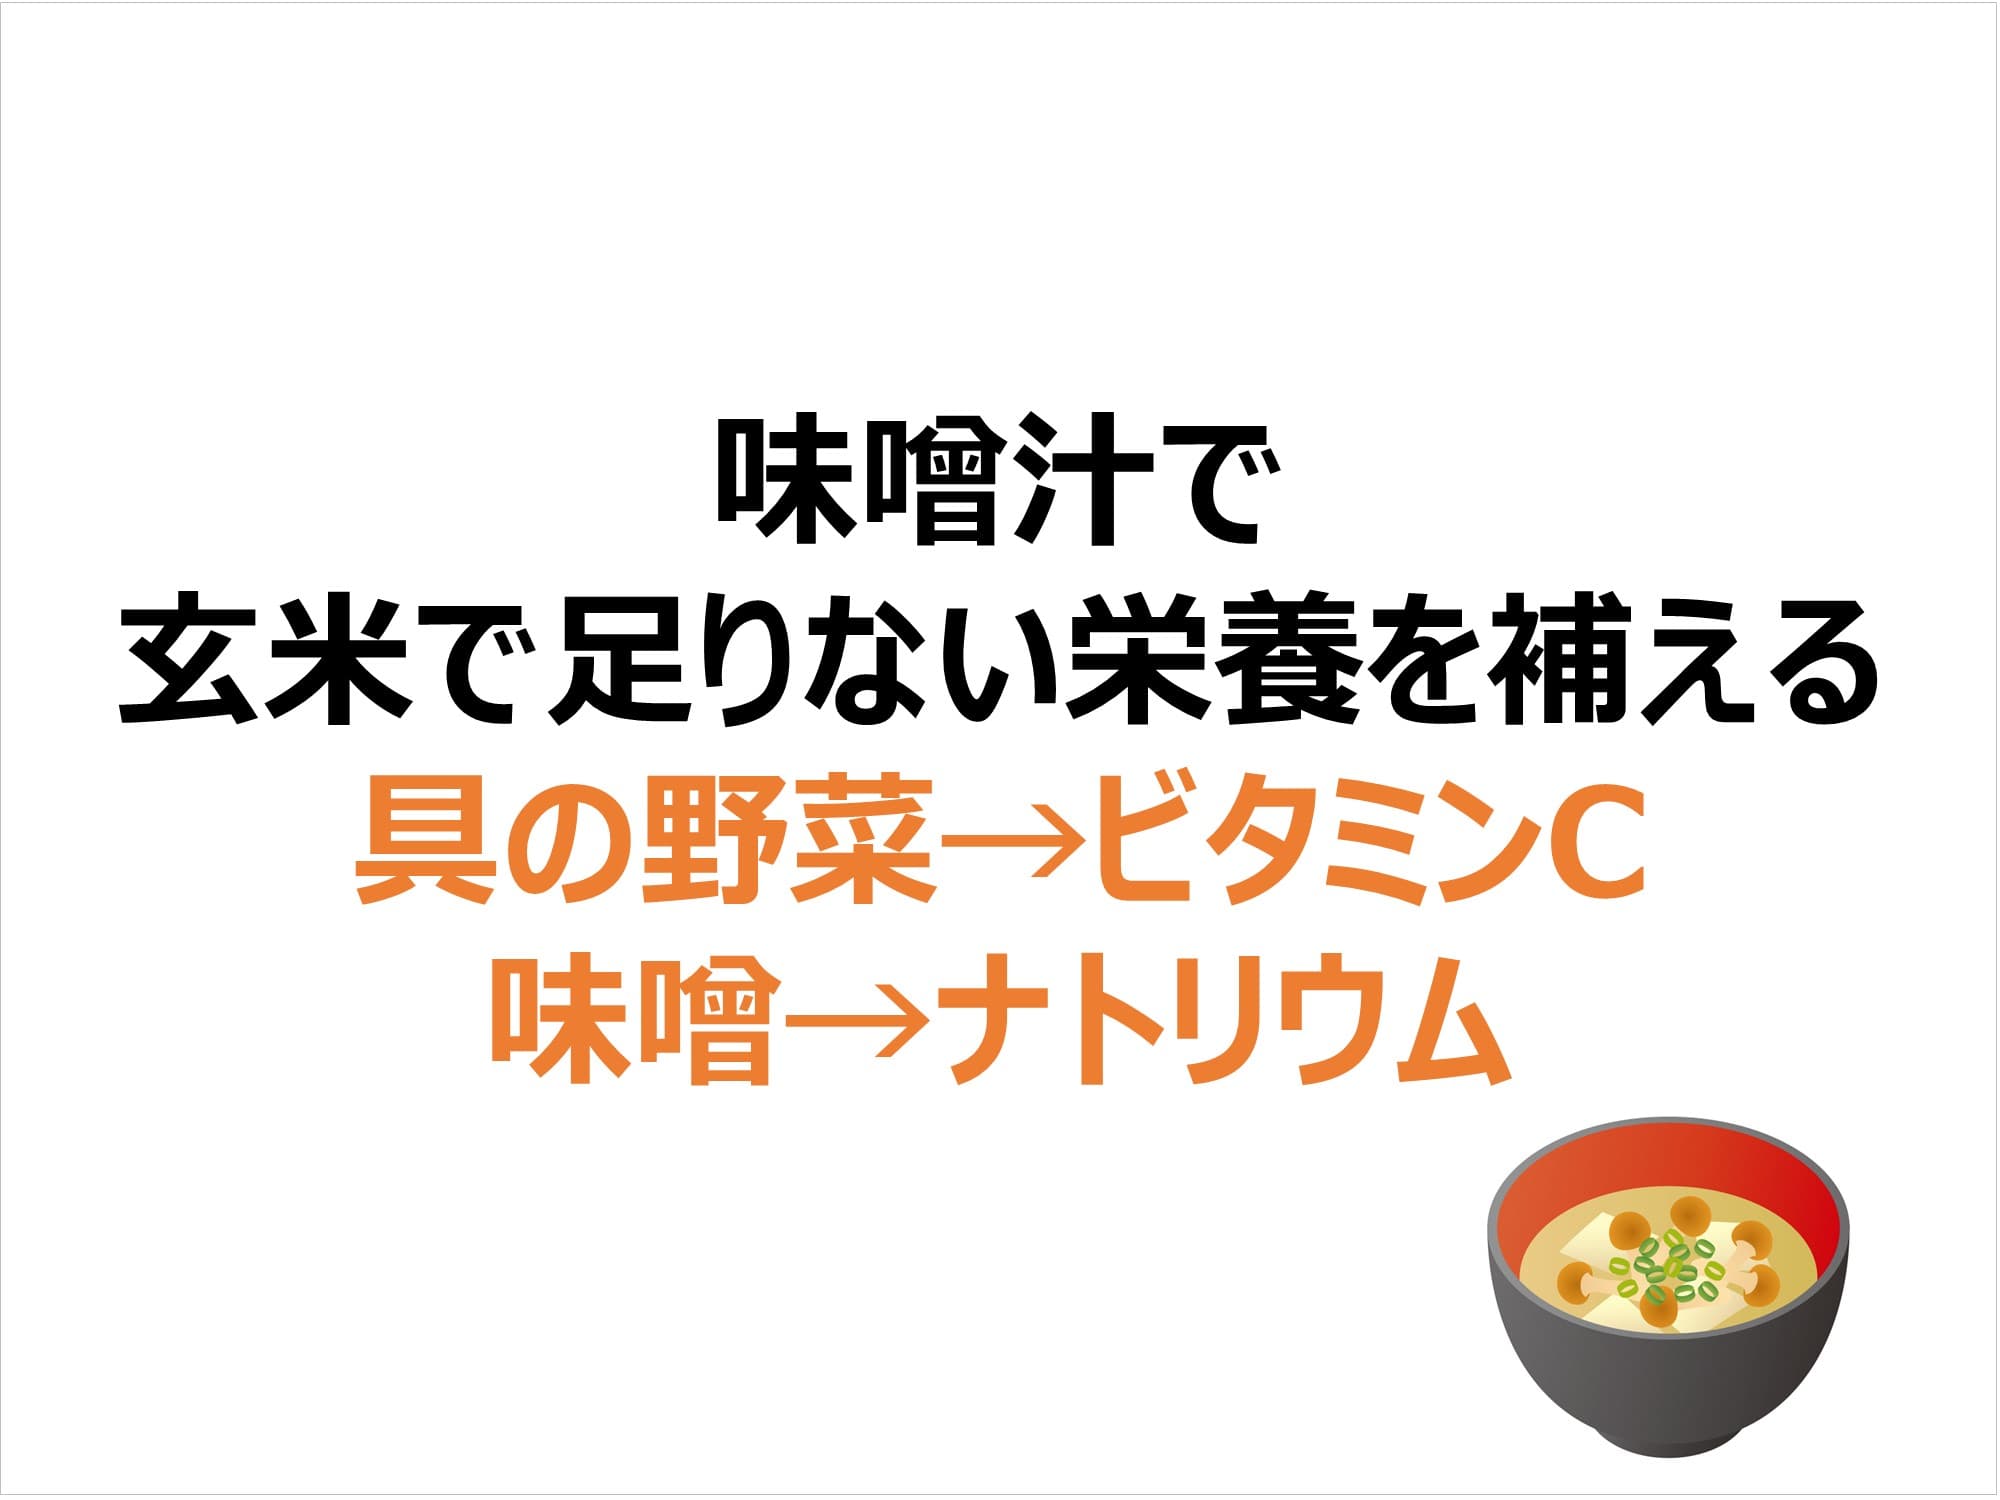 味噌汁で 玄米で足りない栄養を補える 具の野菜→ビタミンC 味噌→ナトリウム